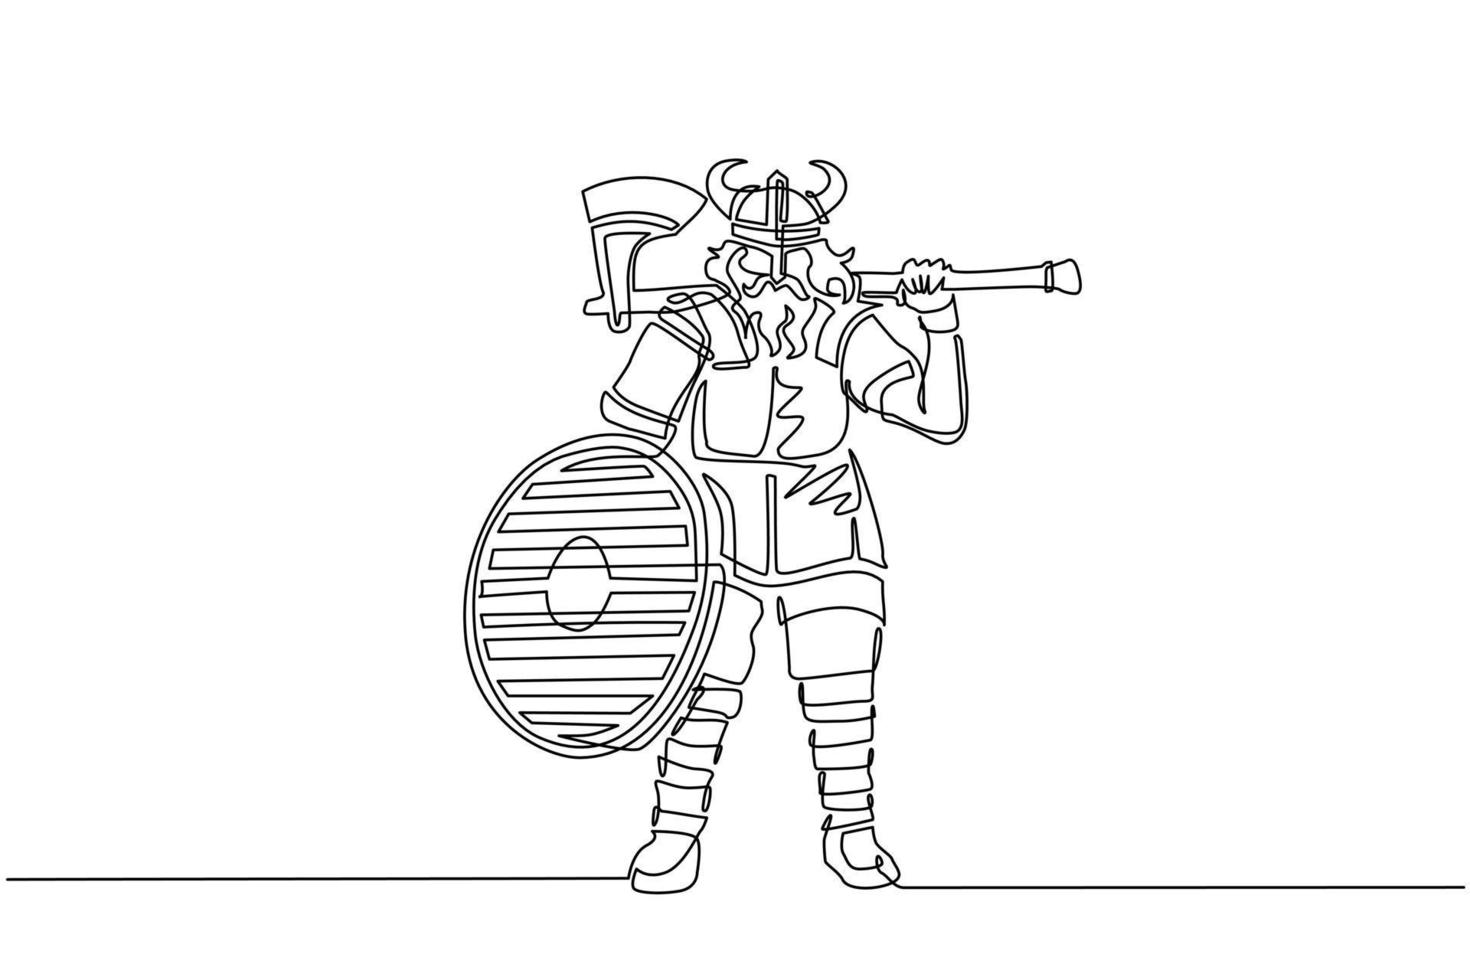 dibujo de una sola línea continua norseman guerrero vikingo asaltante bárbaro con casco con cuernos con barba sosteniendo hacha y escudo sobre fondo blanco aislado. ilustración de vector de diseño de dibujo de una línea